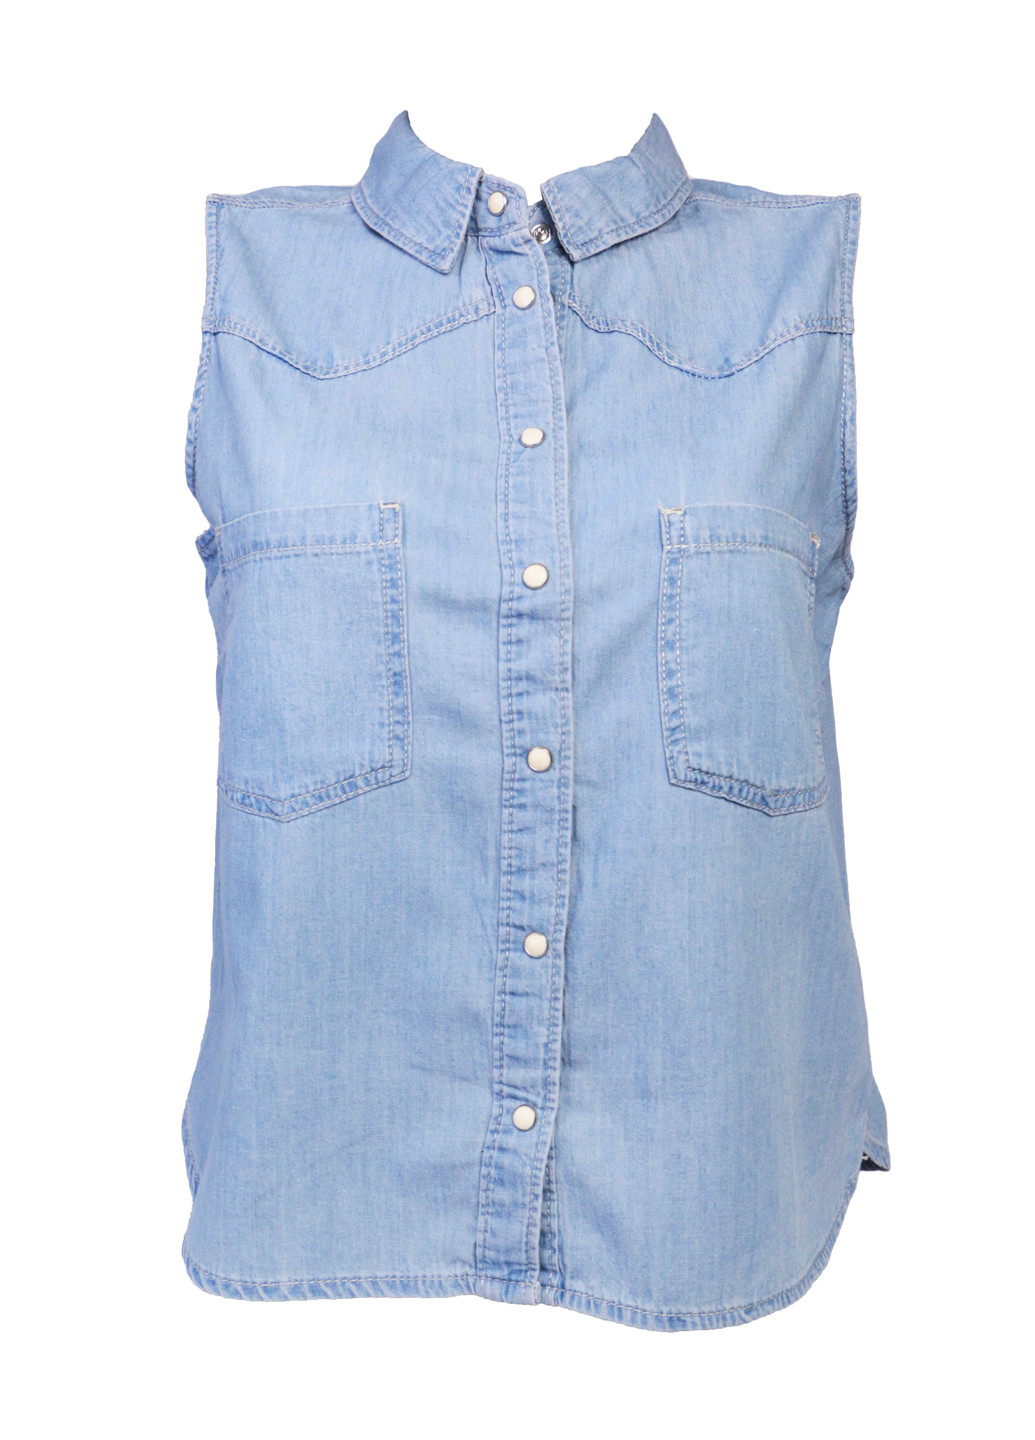 Голубая летняя стильная джинсовая рубашка безрукавка для женщин s 42 голубой Bershka